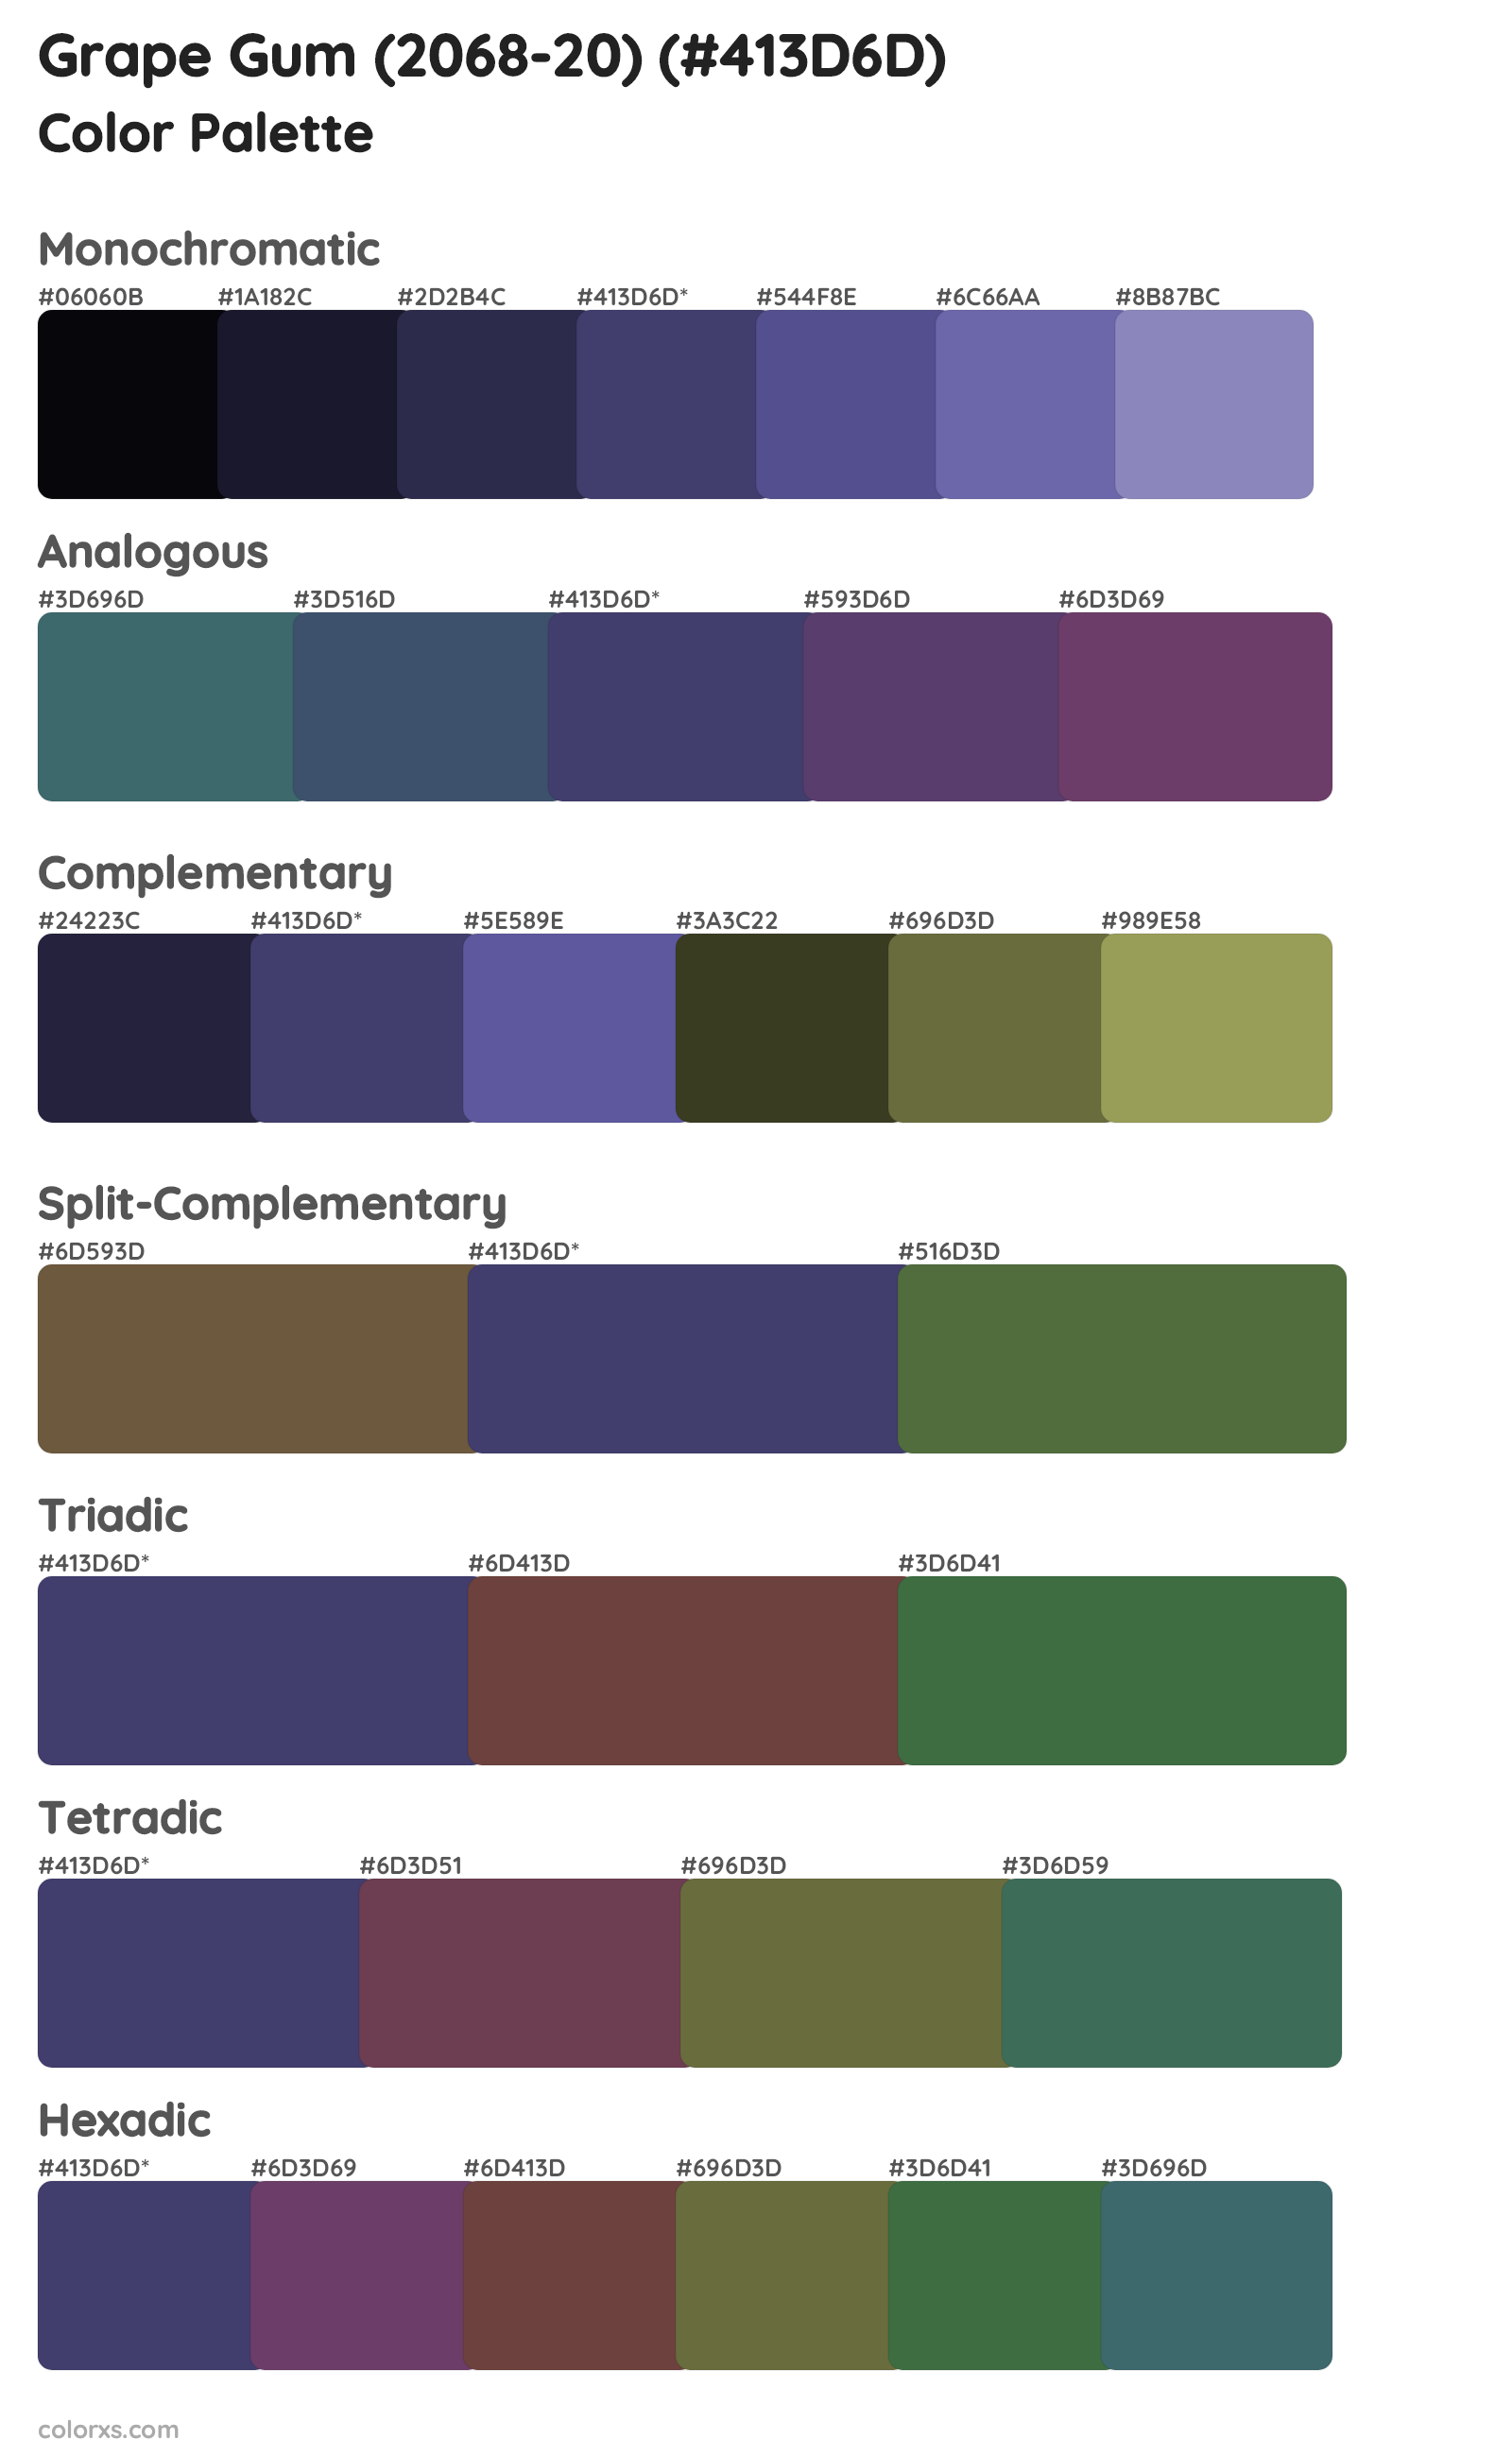 Grape Gum (2068-20) Color Scheme Palettes